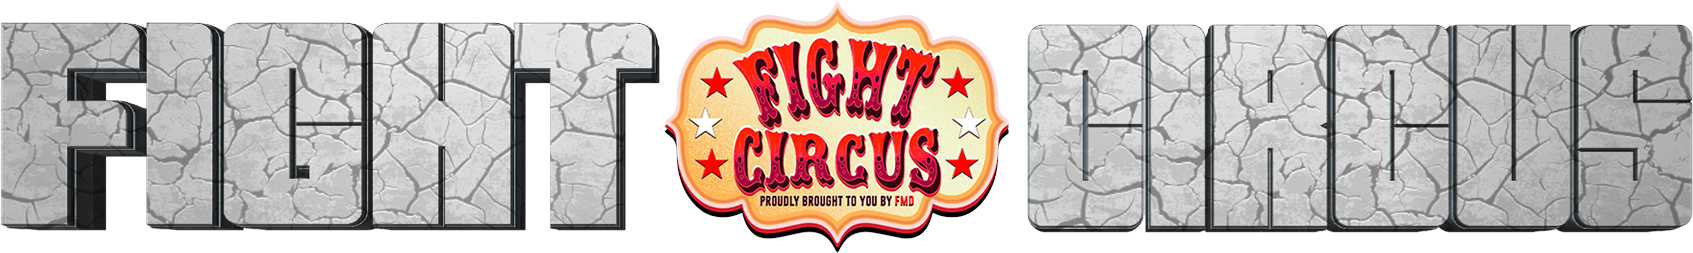 www.fightcircus.tv